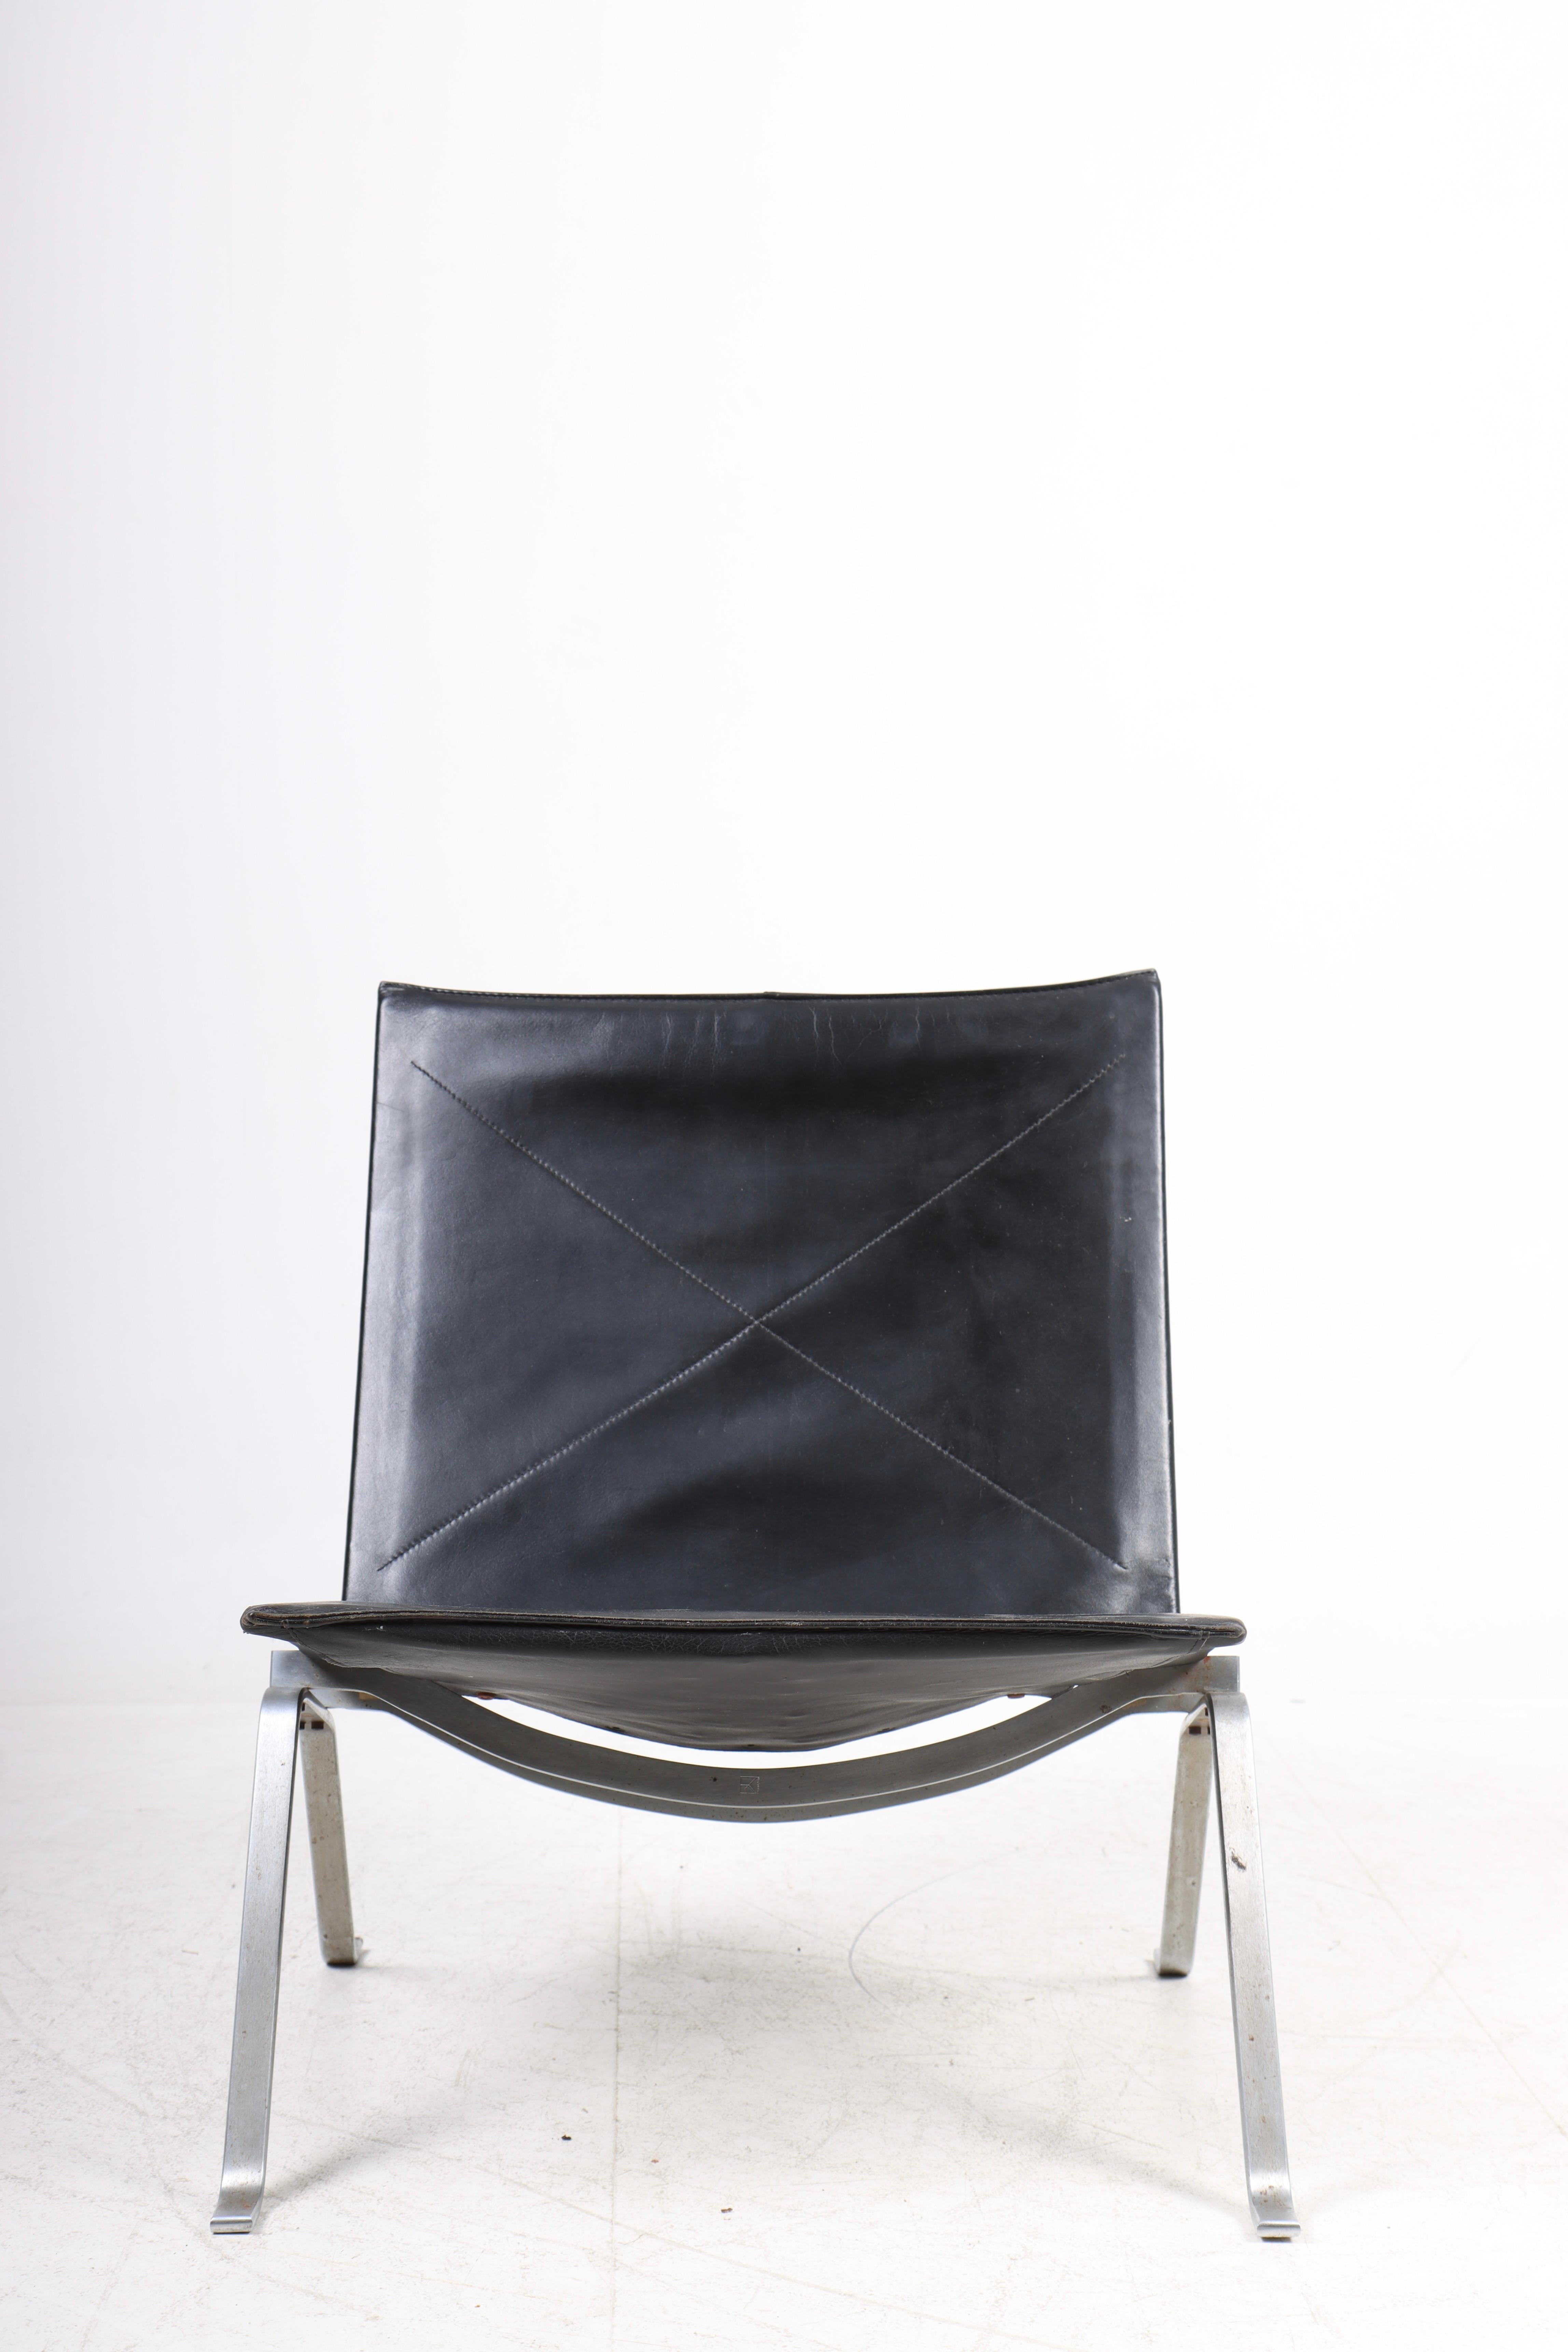 Très belle chaise longue PK22 en cuir patiné. Conçu par Maa. Poul Kjærholm pour Kold Christensen. Fabriqué au Danemark. Etat original.